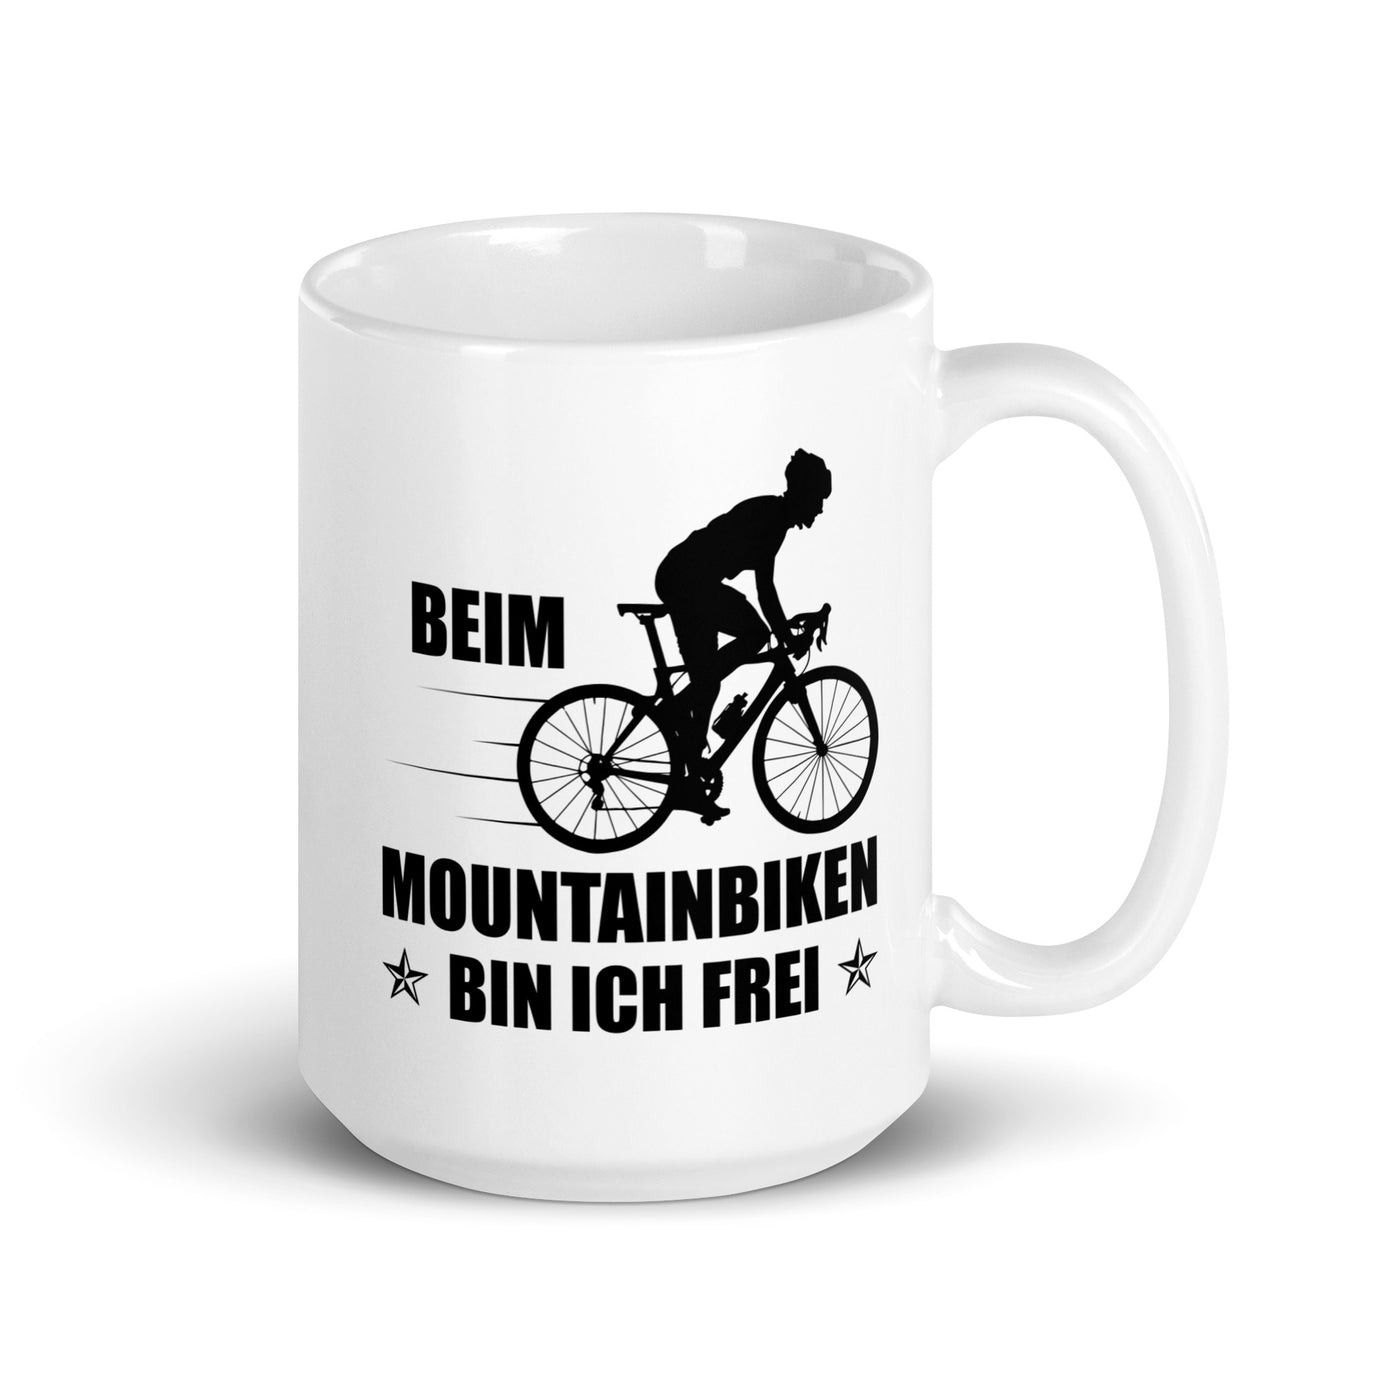 Beim Mountainbiken Bin Ich Frei 2 - Tasse fahrrad 15oz